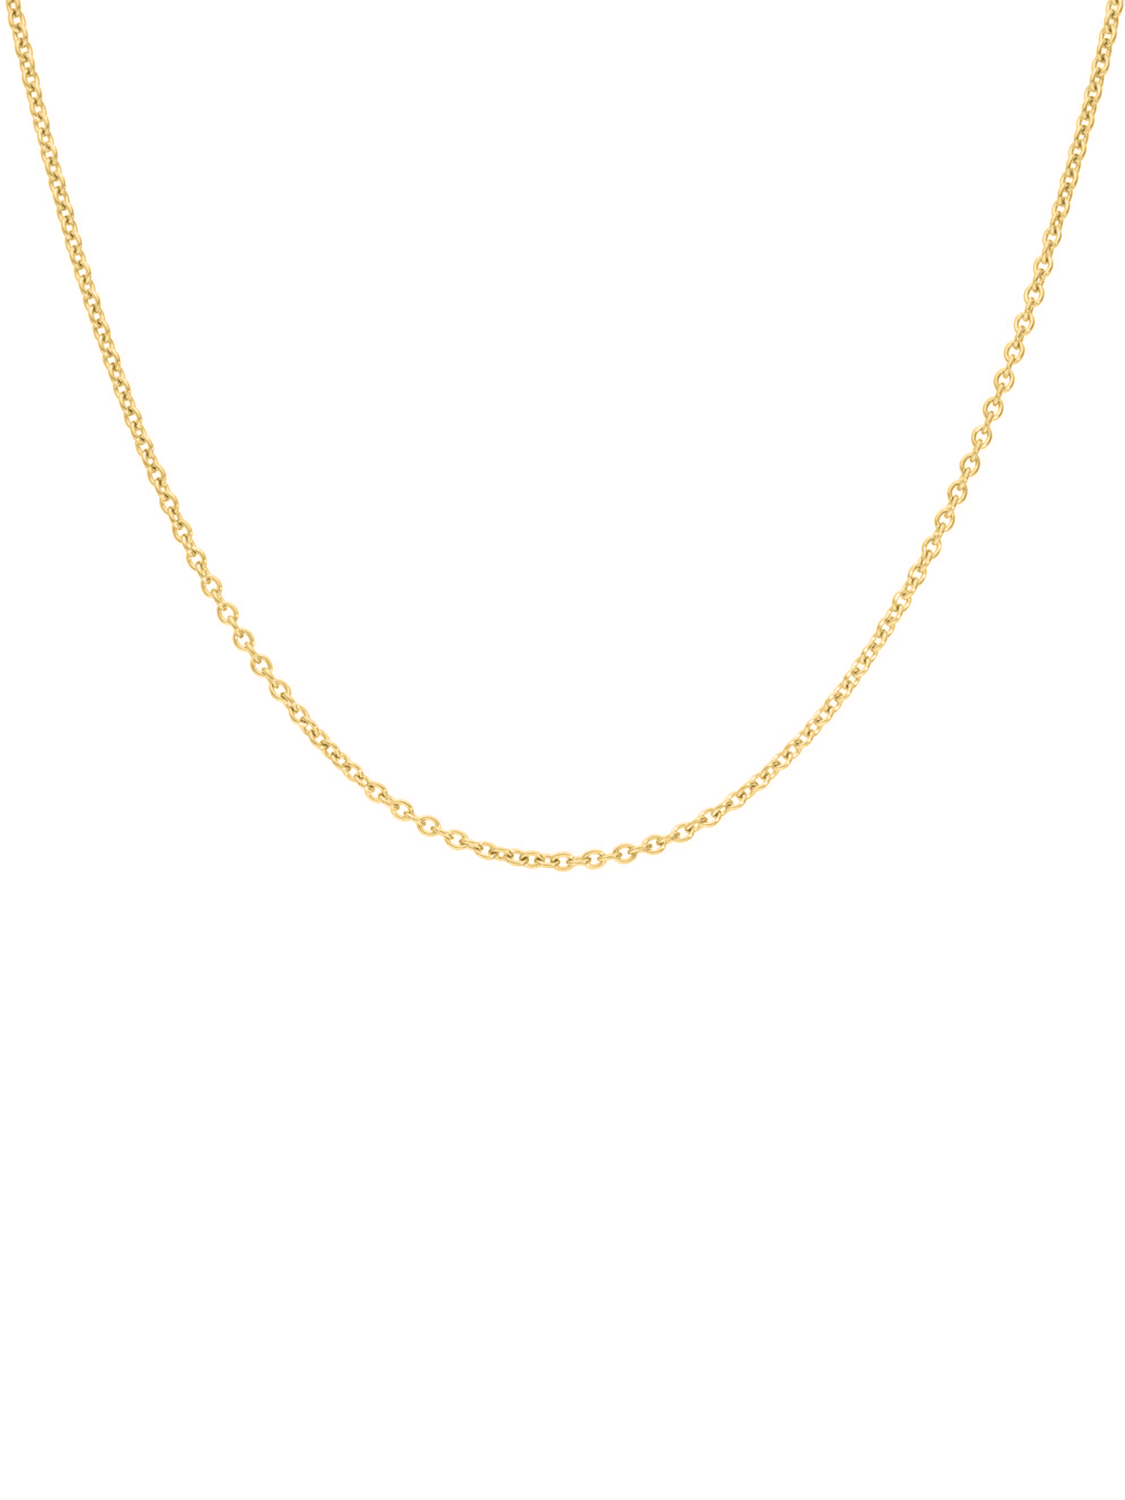 Kordoubt - Halskette 585 Gelbgold Federring - Breite 1,5 mm - Länge 45 cm